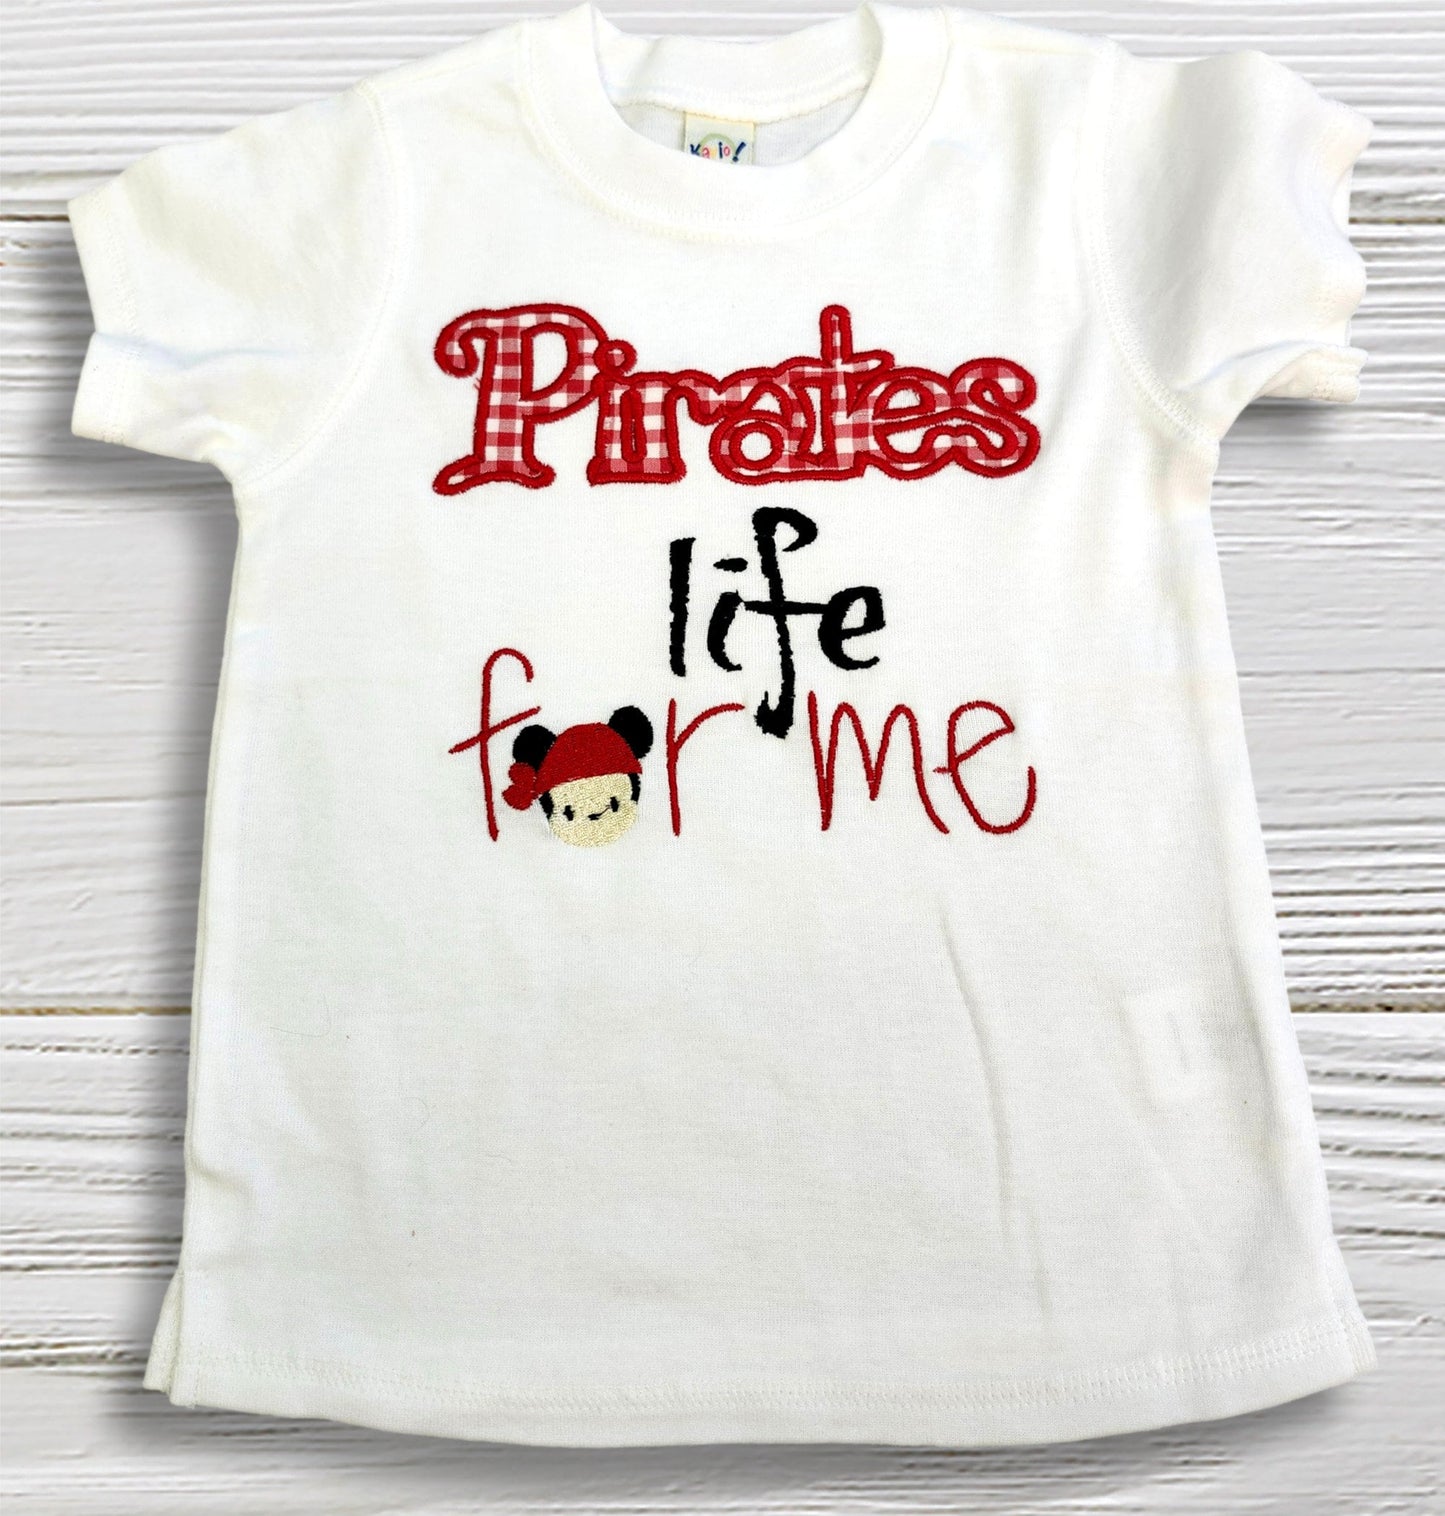 Pirates boys shirt, Pirate life toddler shirt, Birthday pirate shirt, Cruise pirate shirt